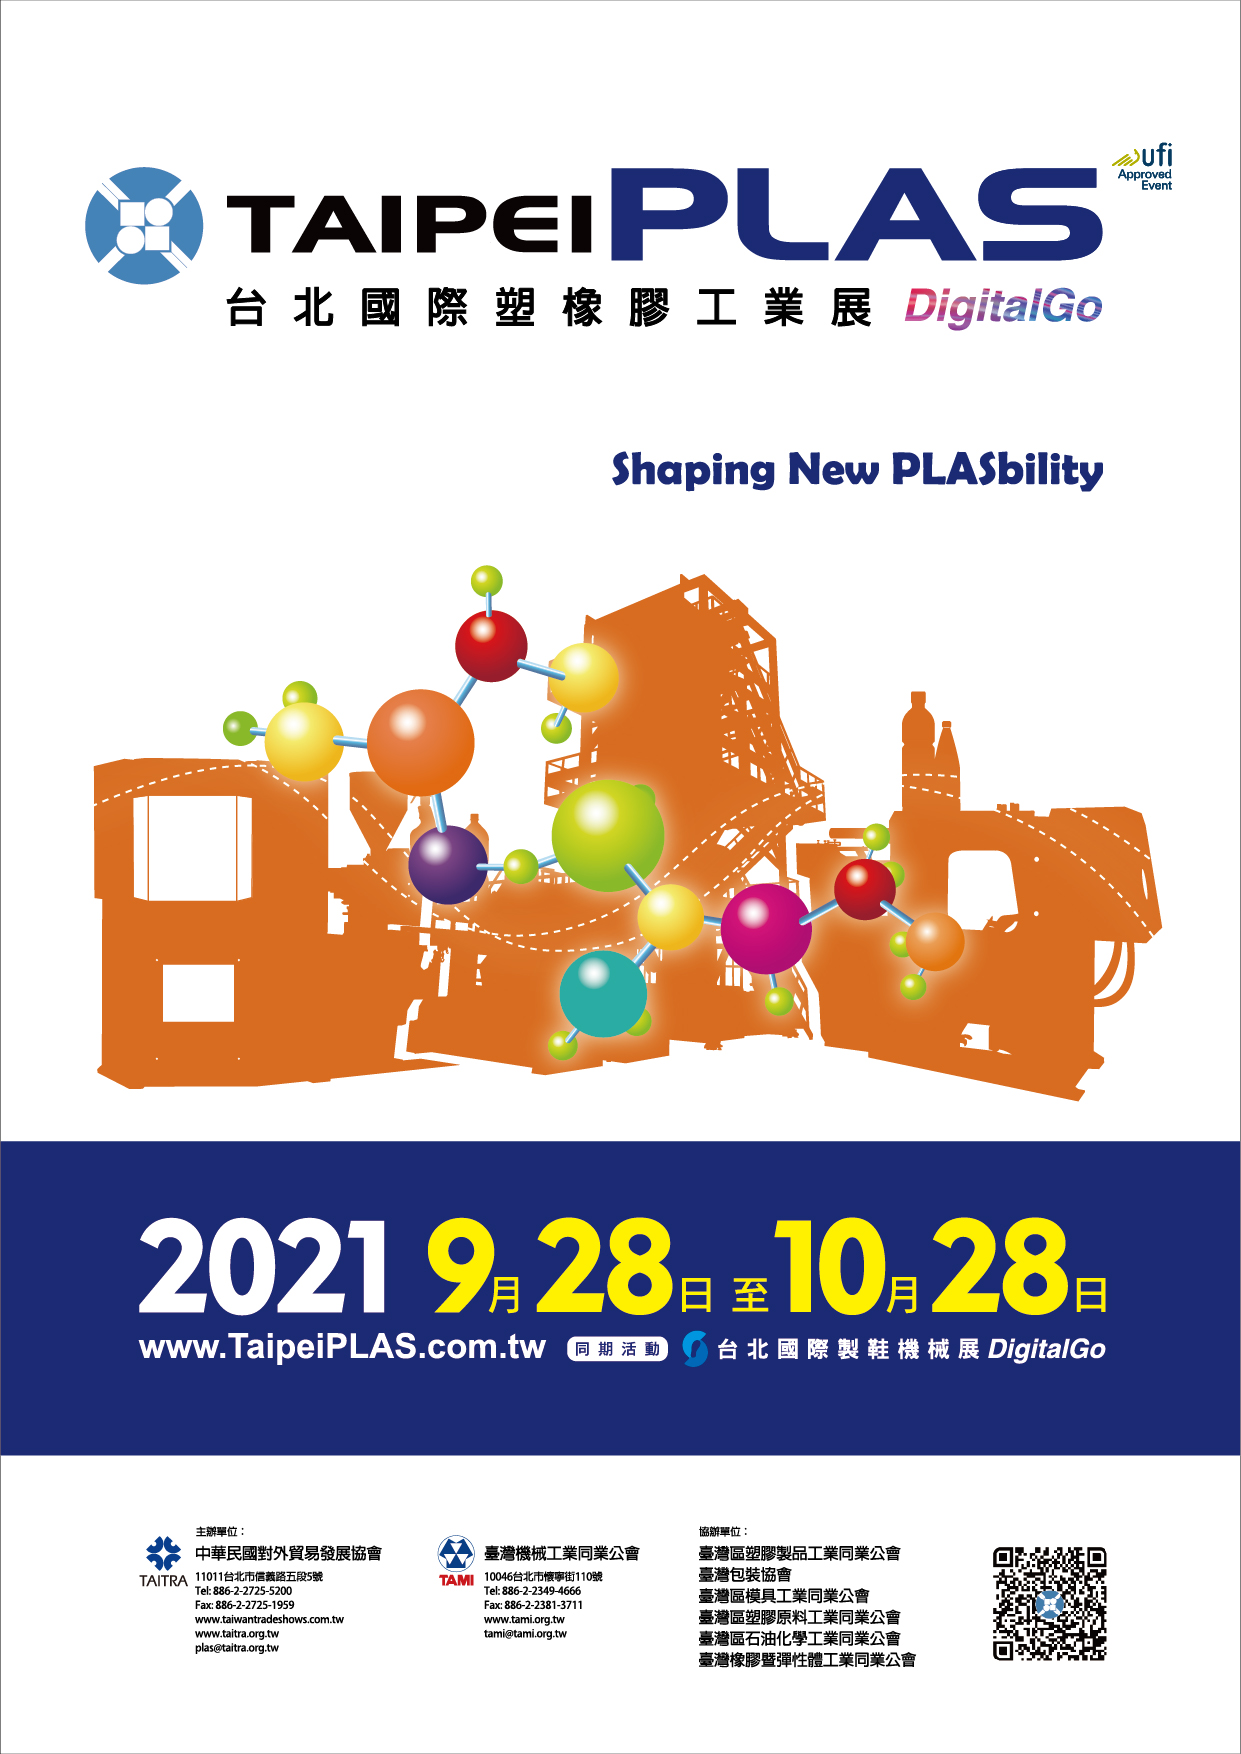 Taipei PLAS Digital Go (Dando forma a la nueva PLASbility)